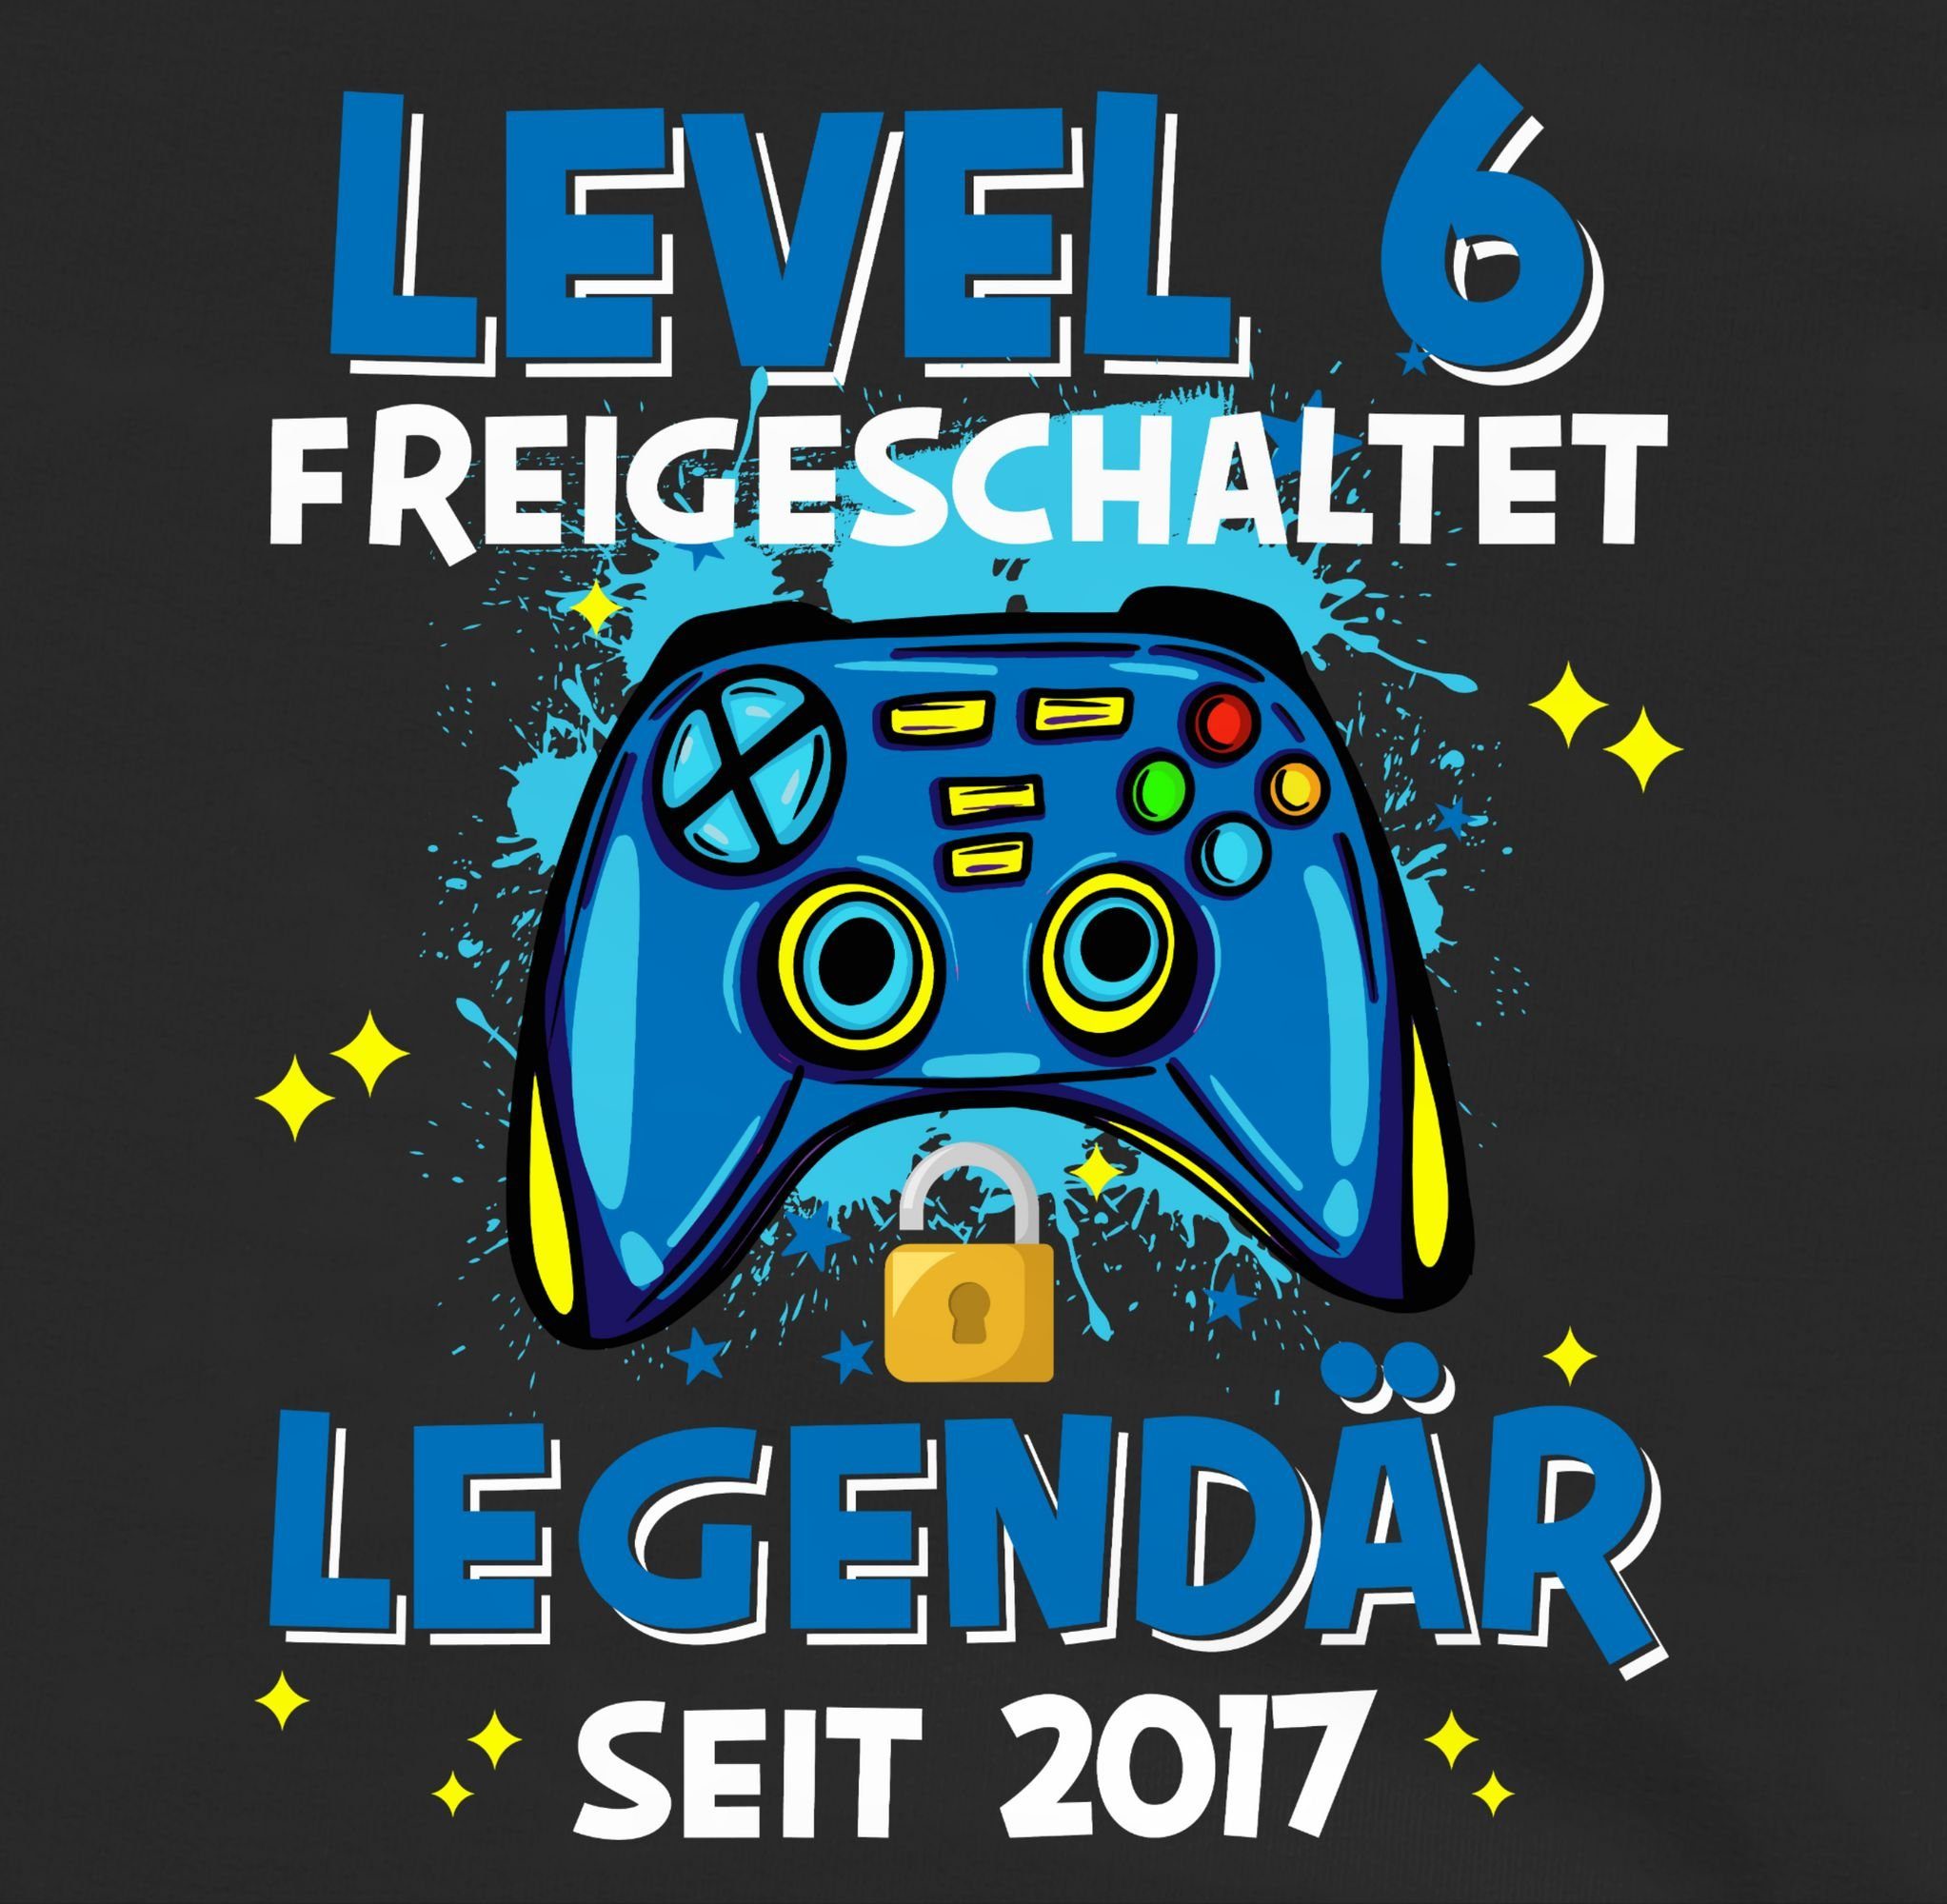 6. Geburtstag Shirtracer Sweatshirt seit 2017 freigeschaltet 6 2 Legendär Level Schwarz